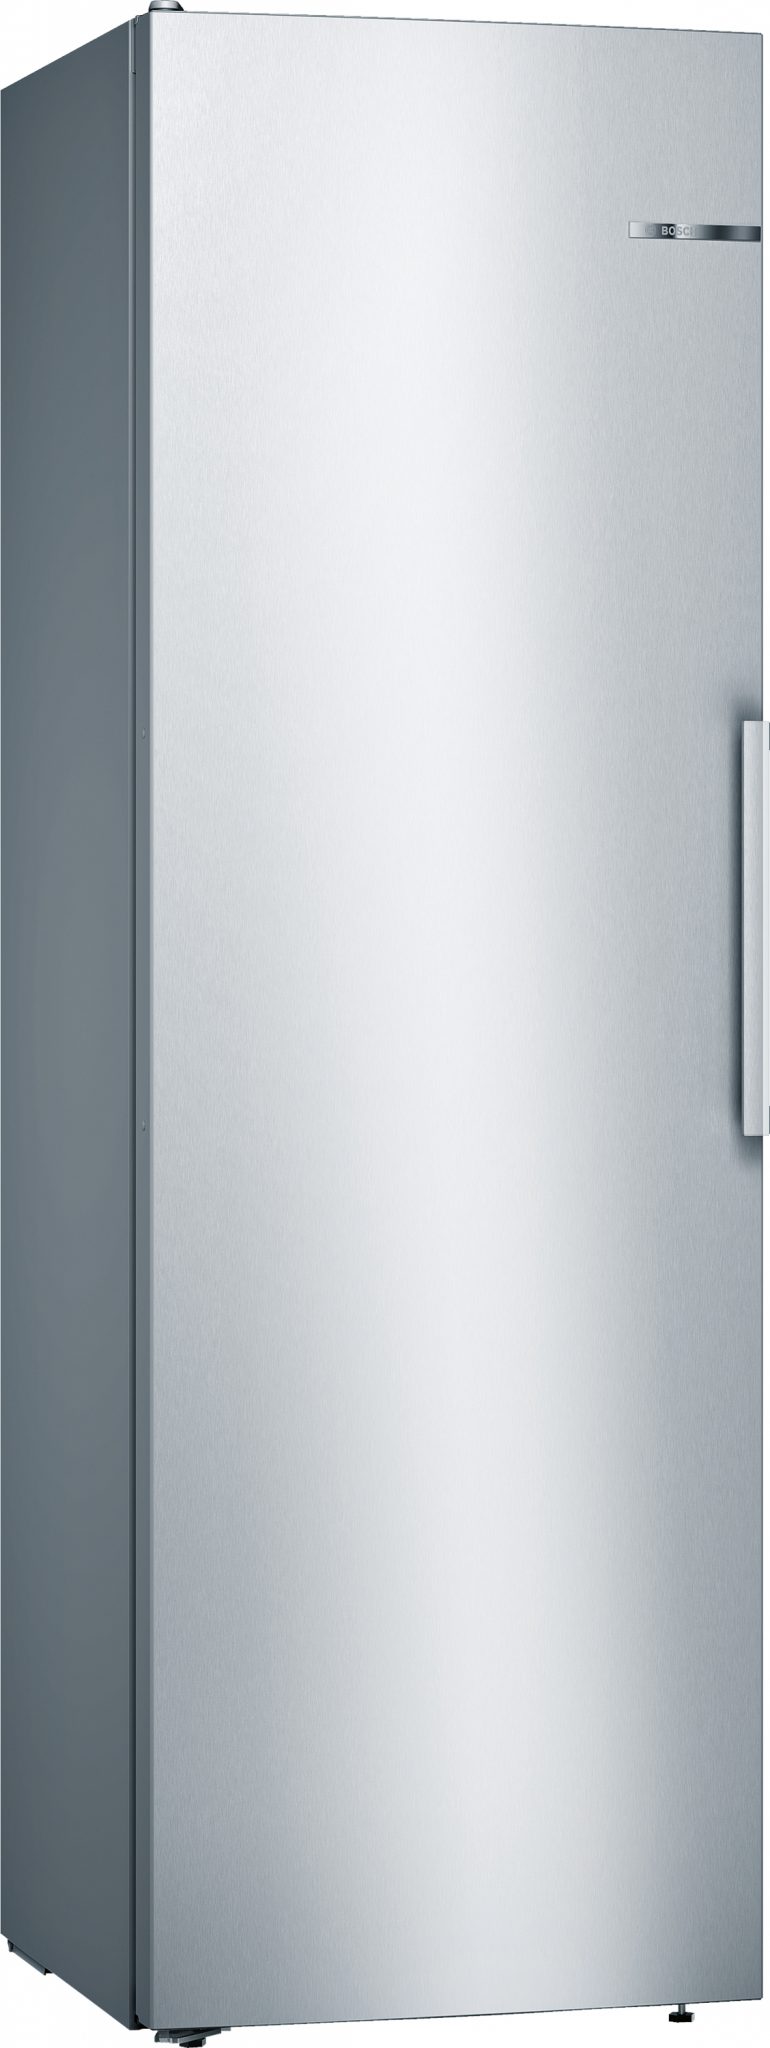 Bosch Køleskab og Frit A.m.b.a.